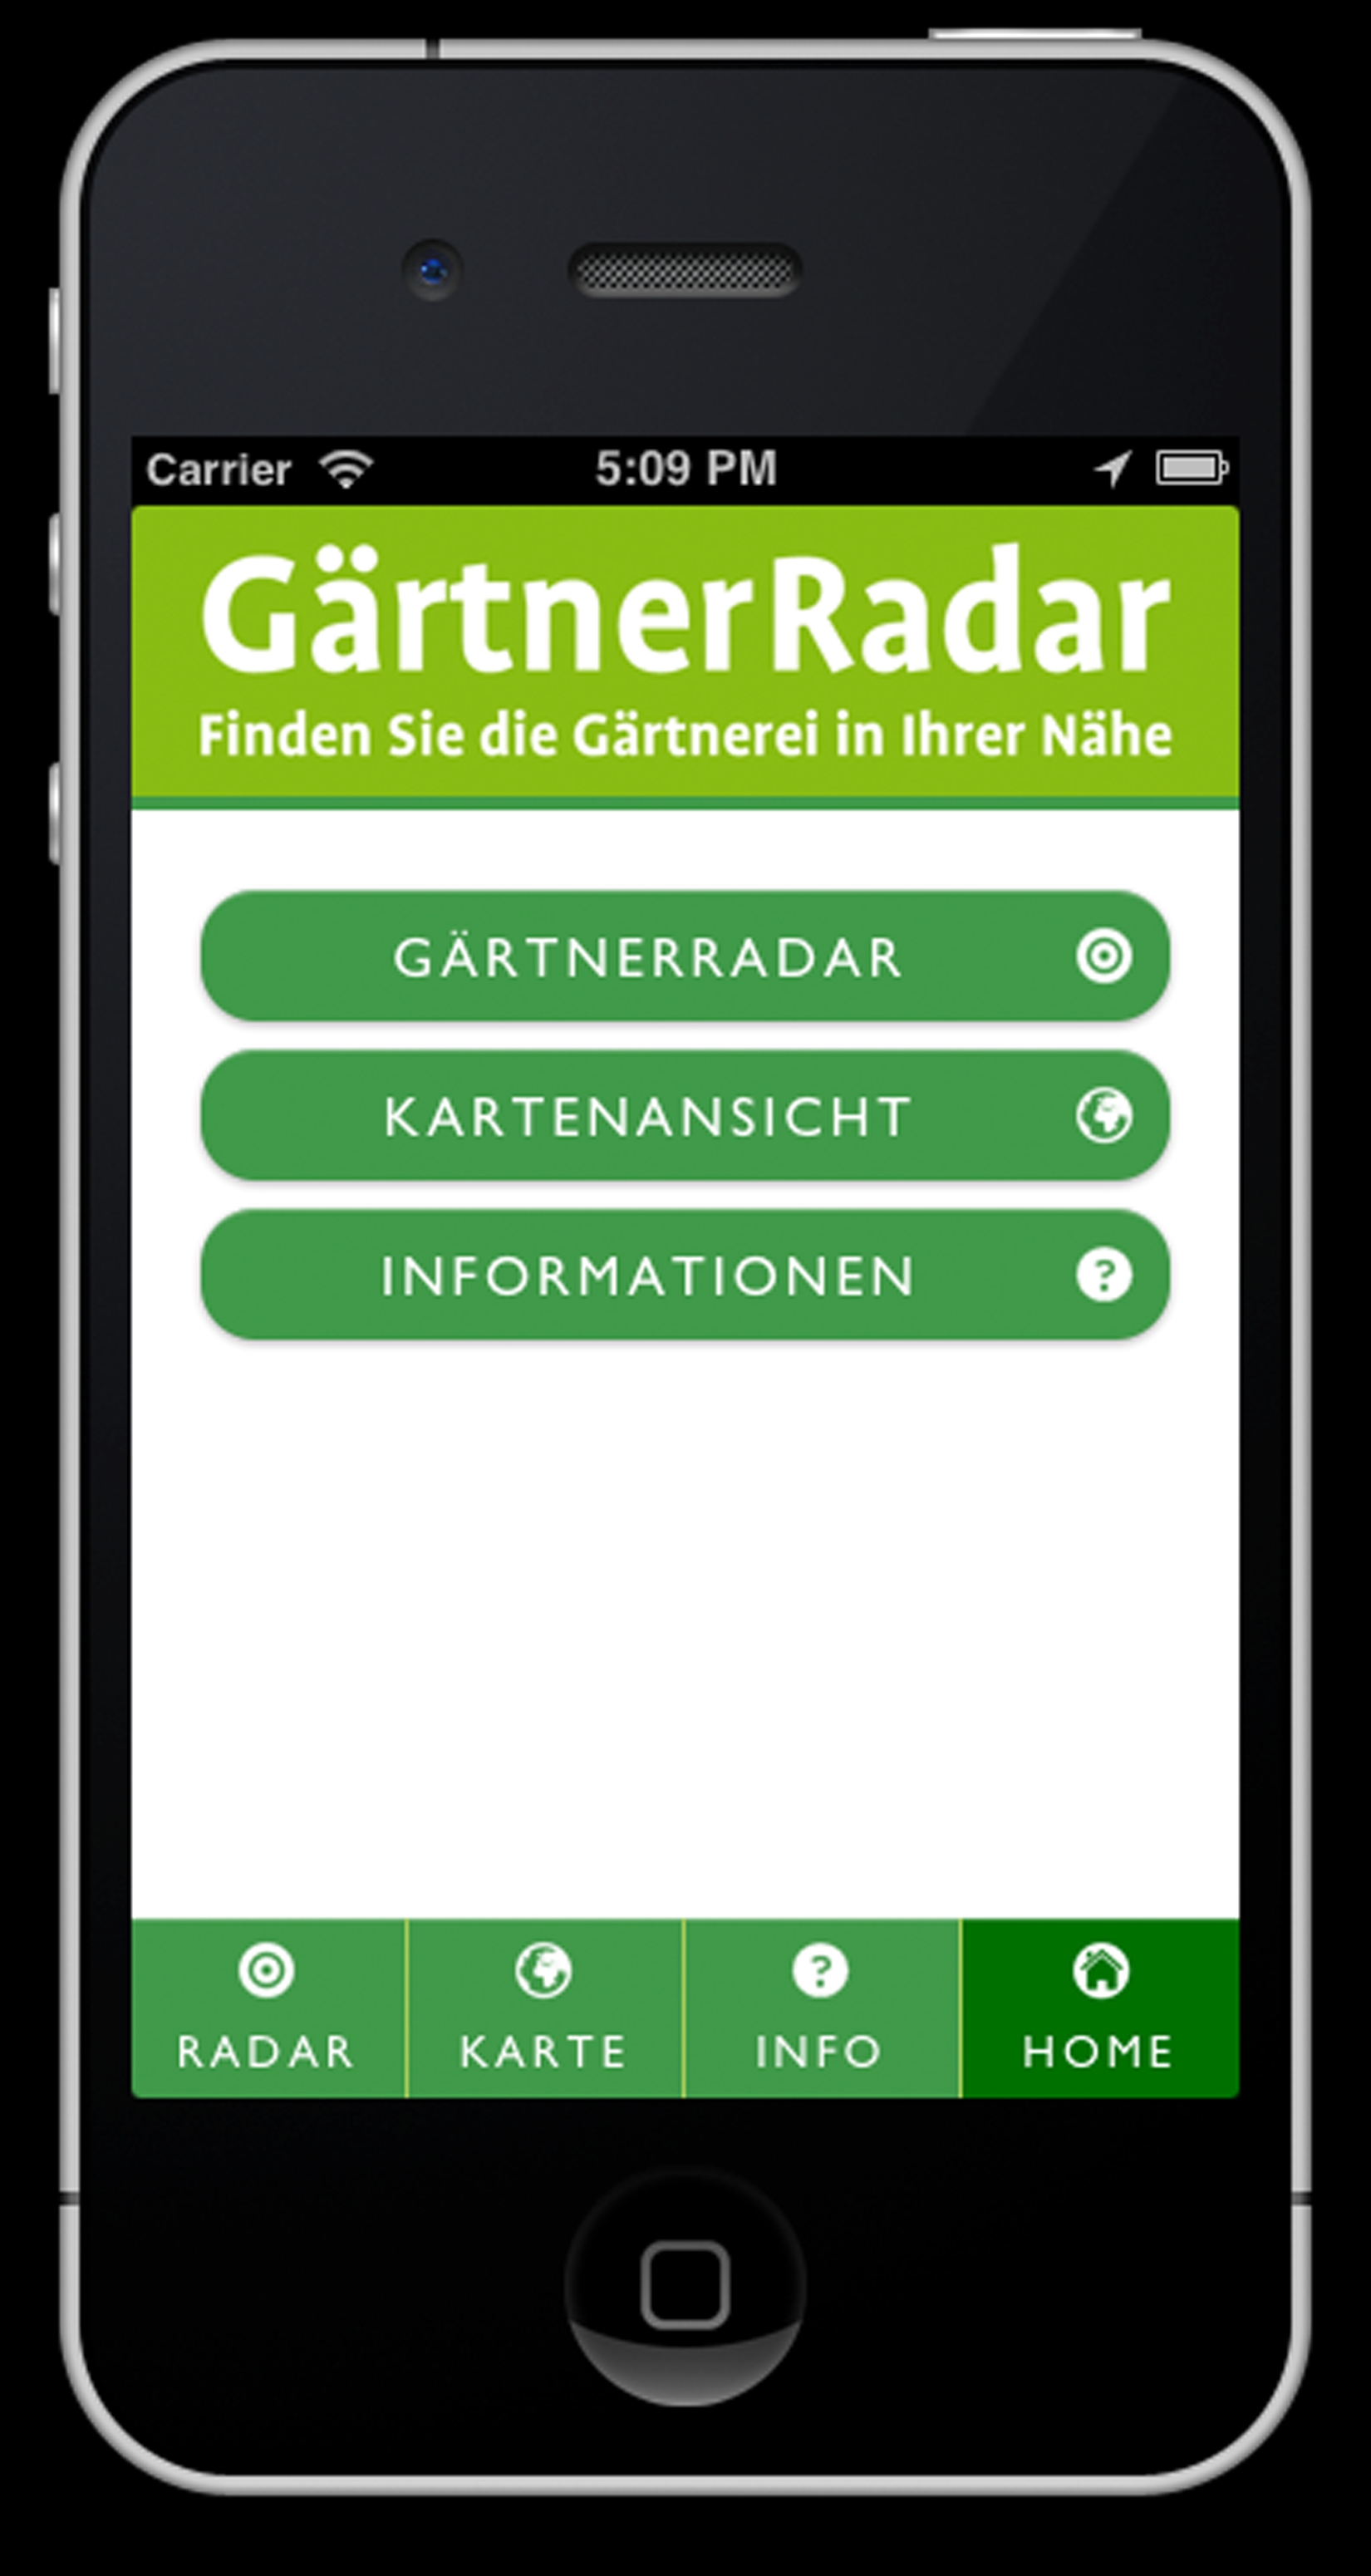 GärtnerRadar: Pfiffige App verhilft zu schönen Momenten